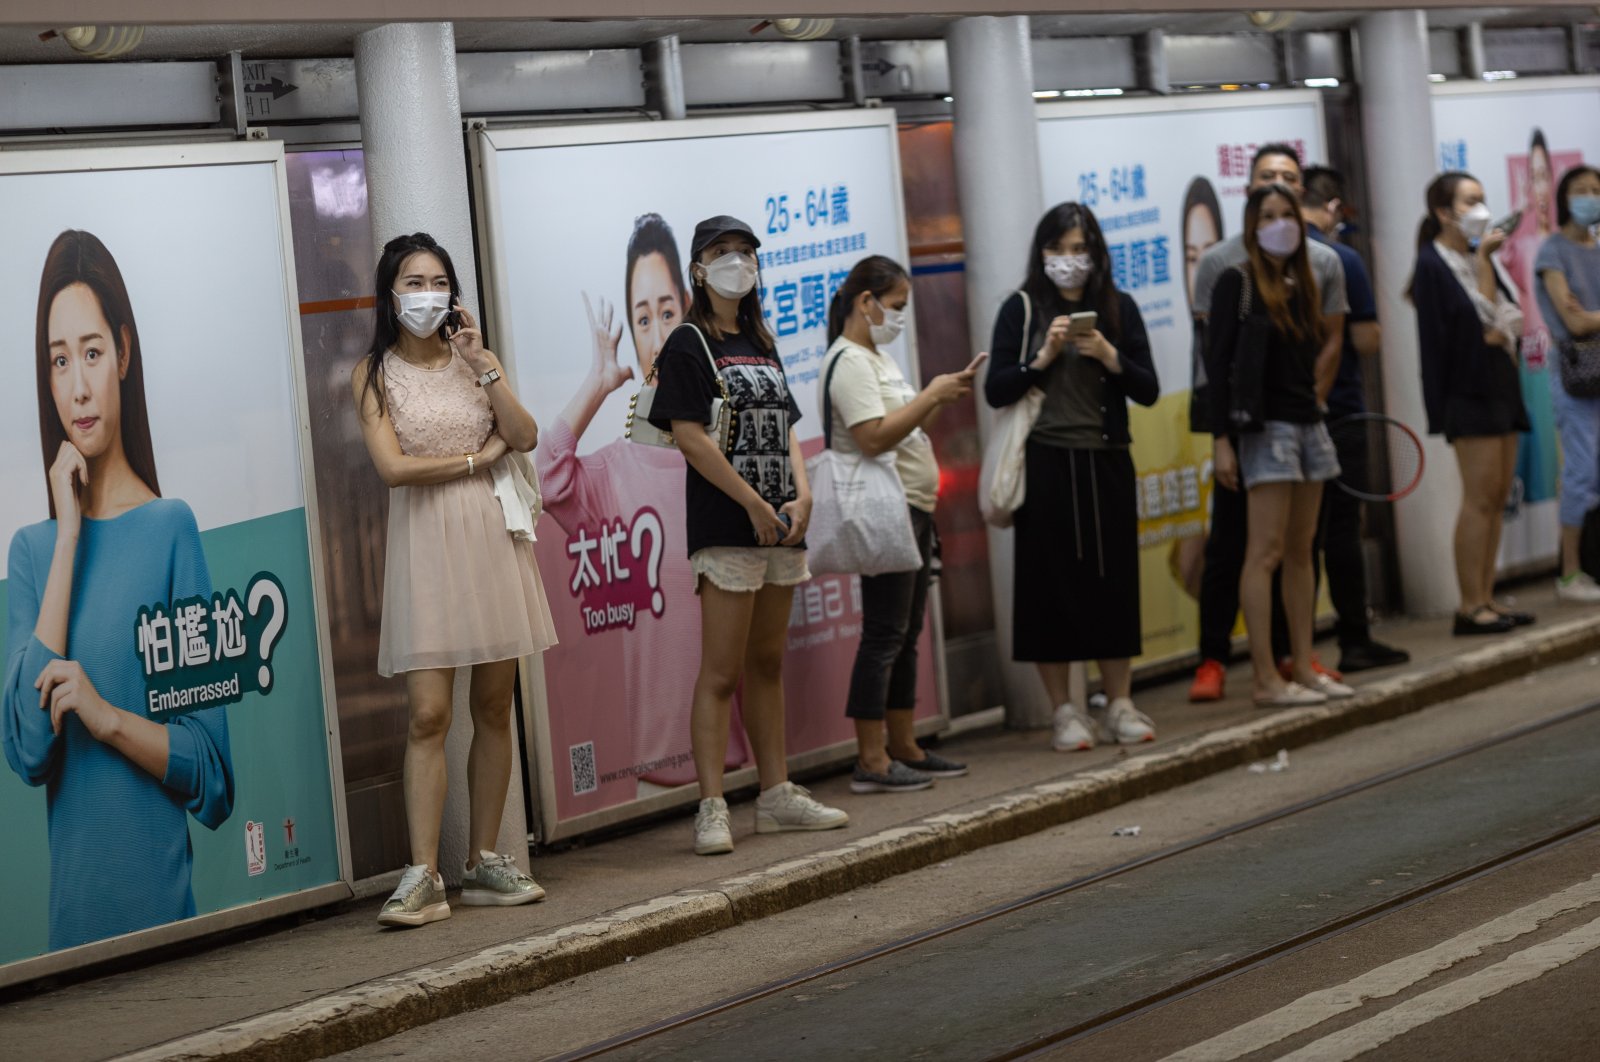 People wear masks at a tramway stop in Wanchai district, Hong Kong, China, Oct. 14, 2022. (EPA Photo)